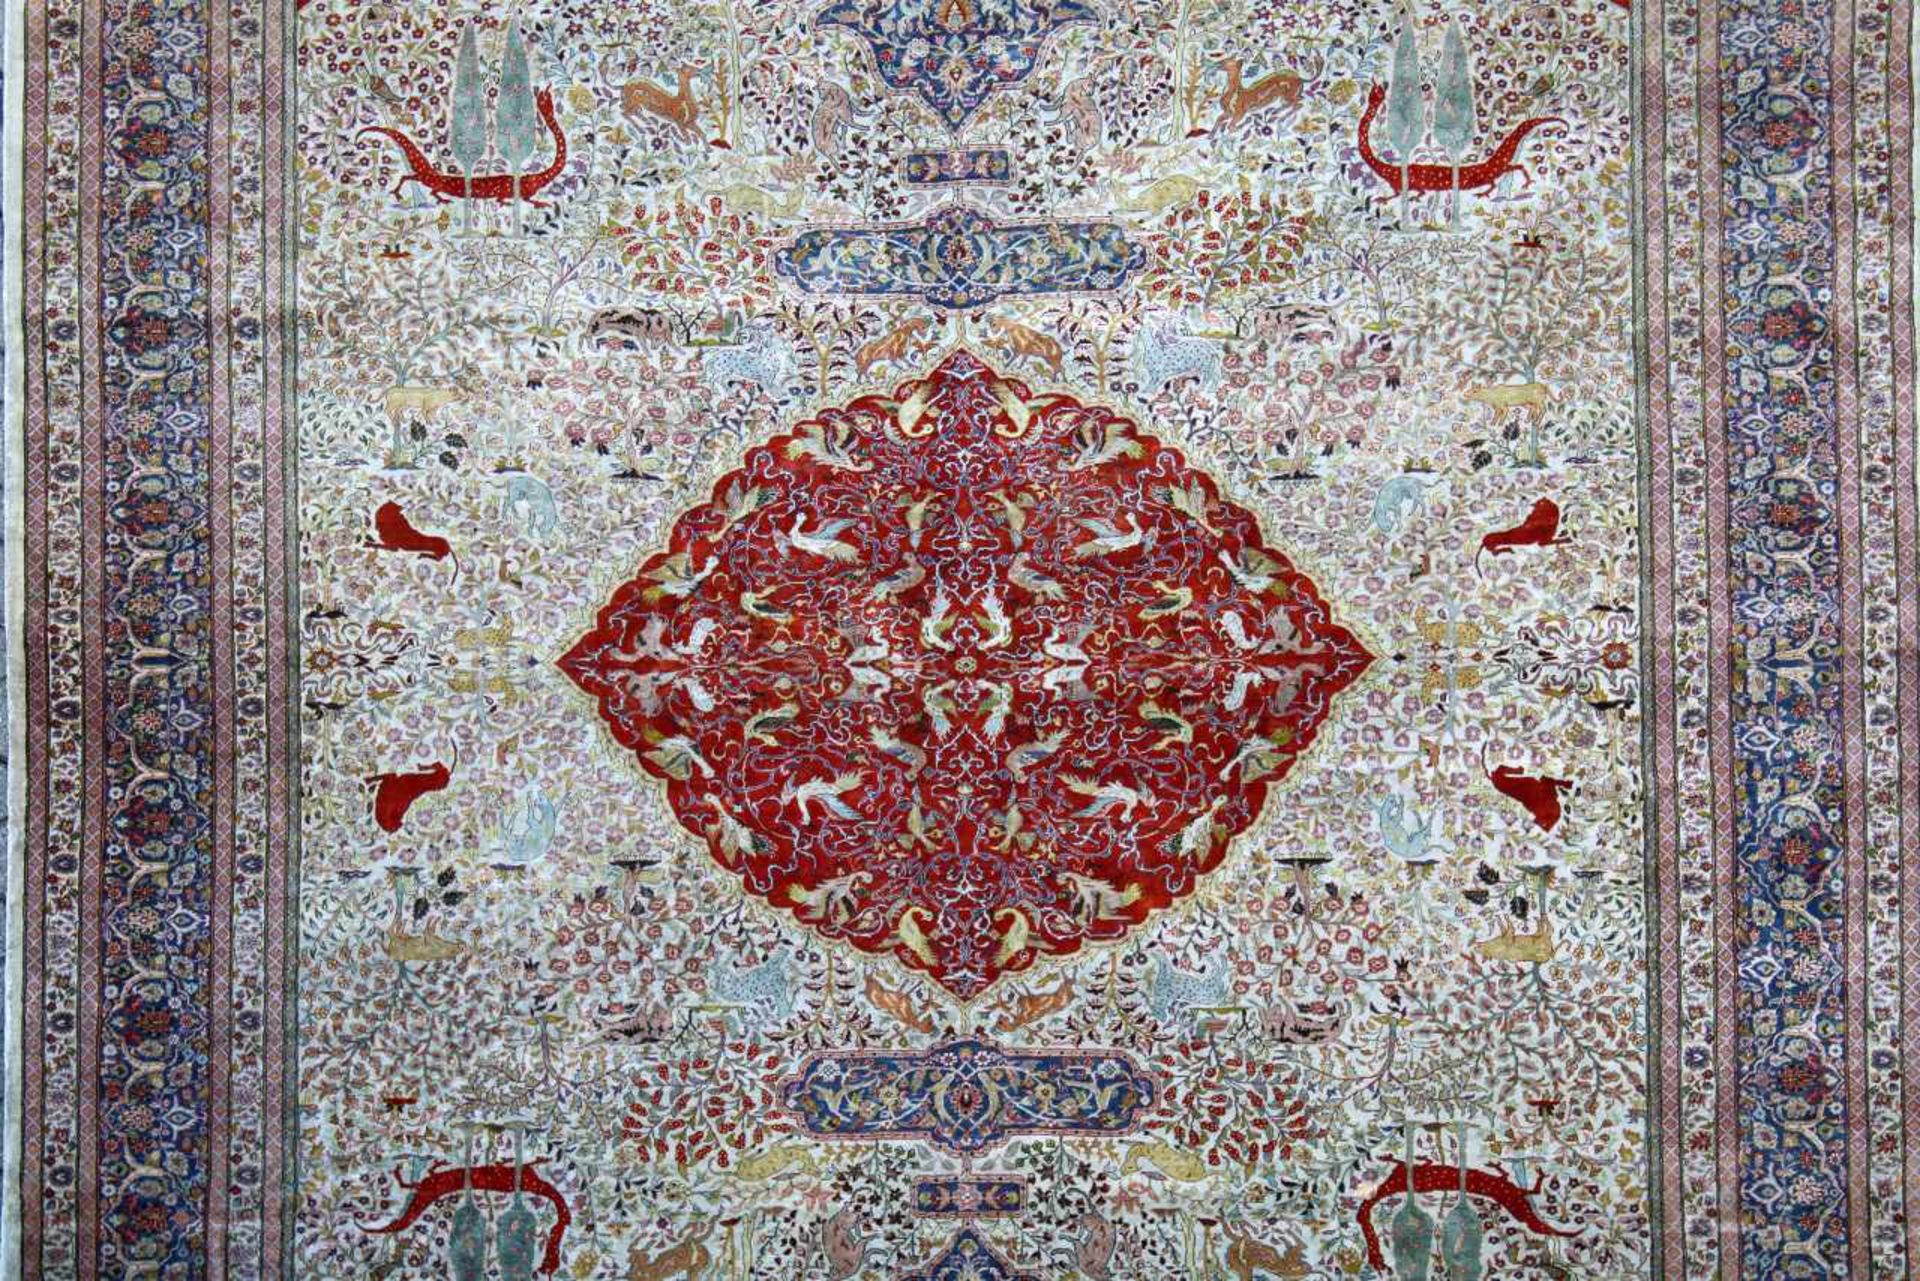 Seidenteppich HerekeBeige- und Rottöne, reiche Zier an Tieren und floralen Elementen, mittig - Bild 3 aus 3